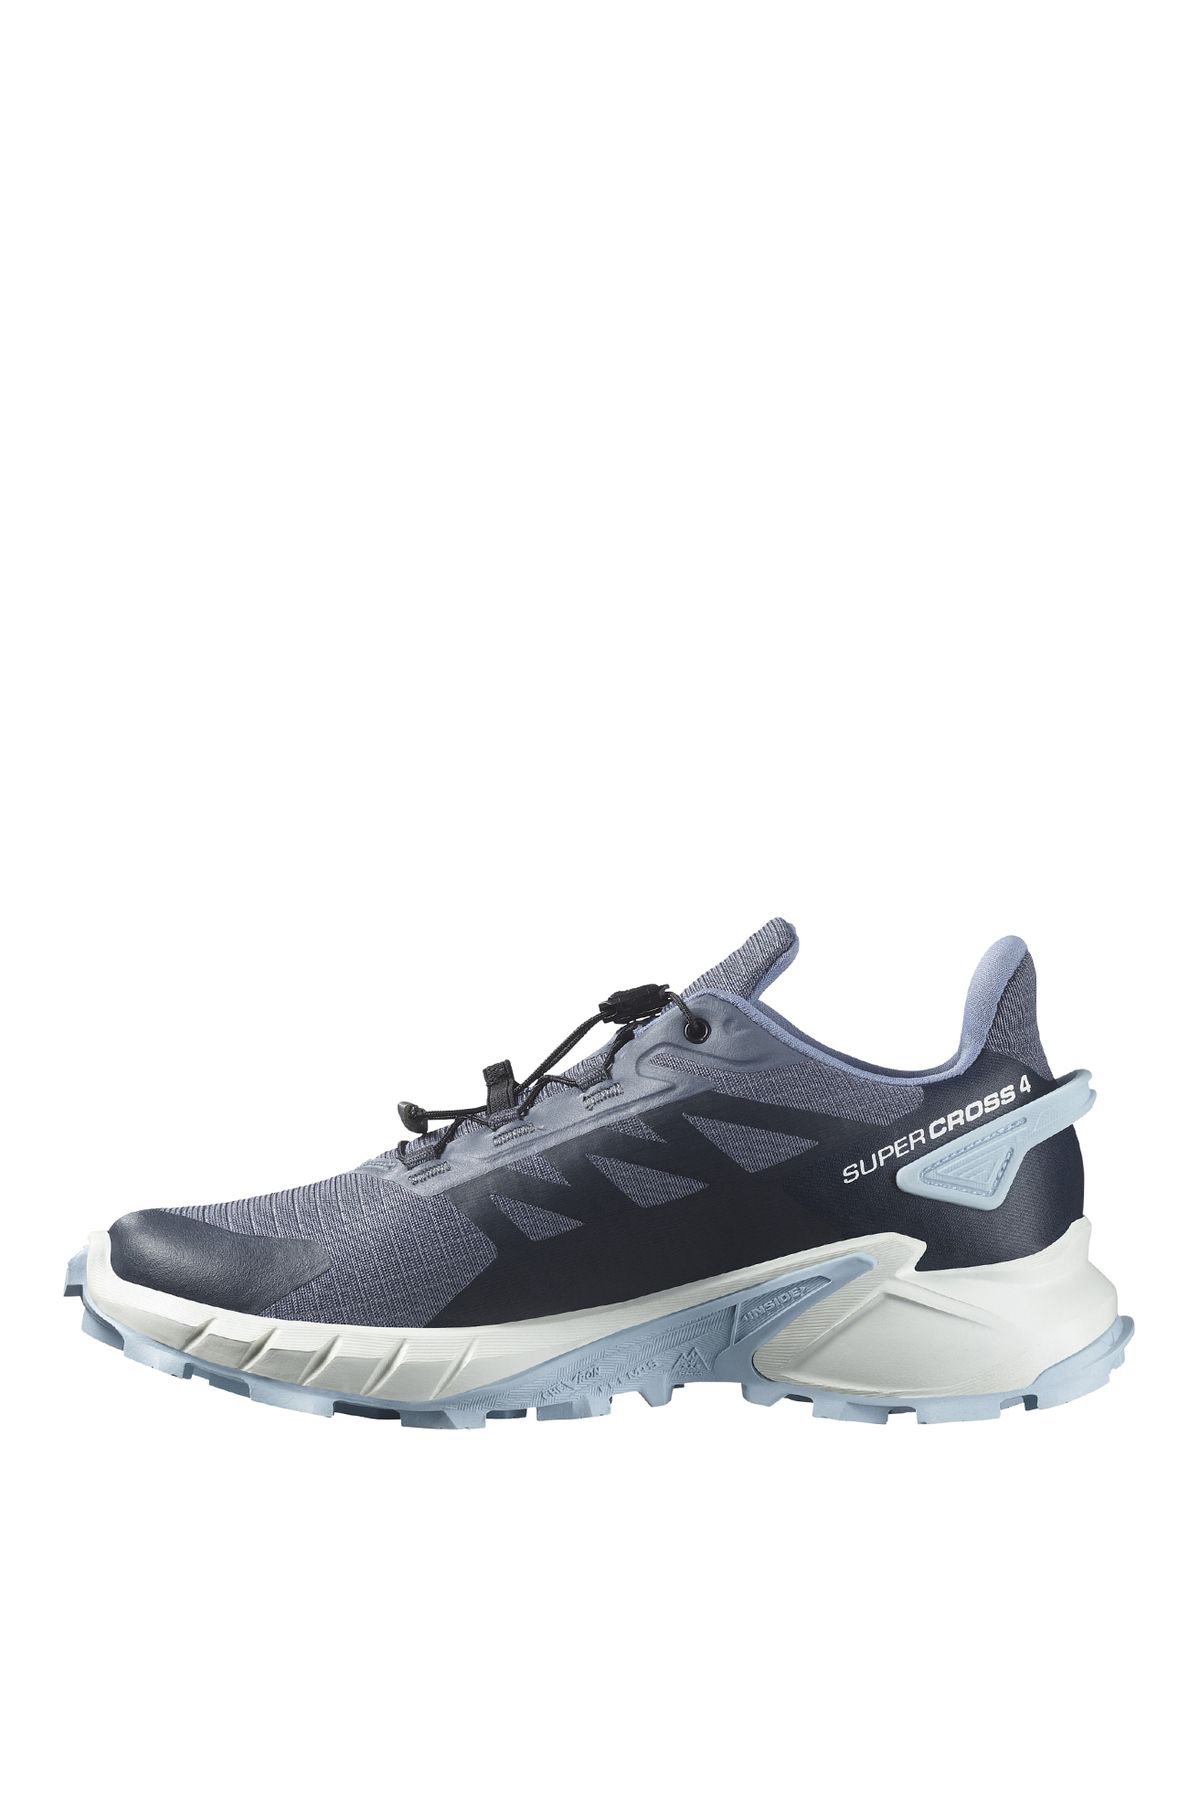 Salomon Gri - Mavi Kadın Koşu Ayakkabısı L47461700_SUPERCROSS 4 W